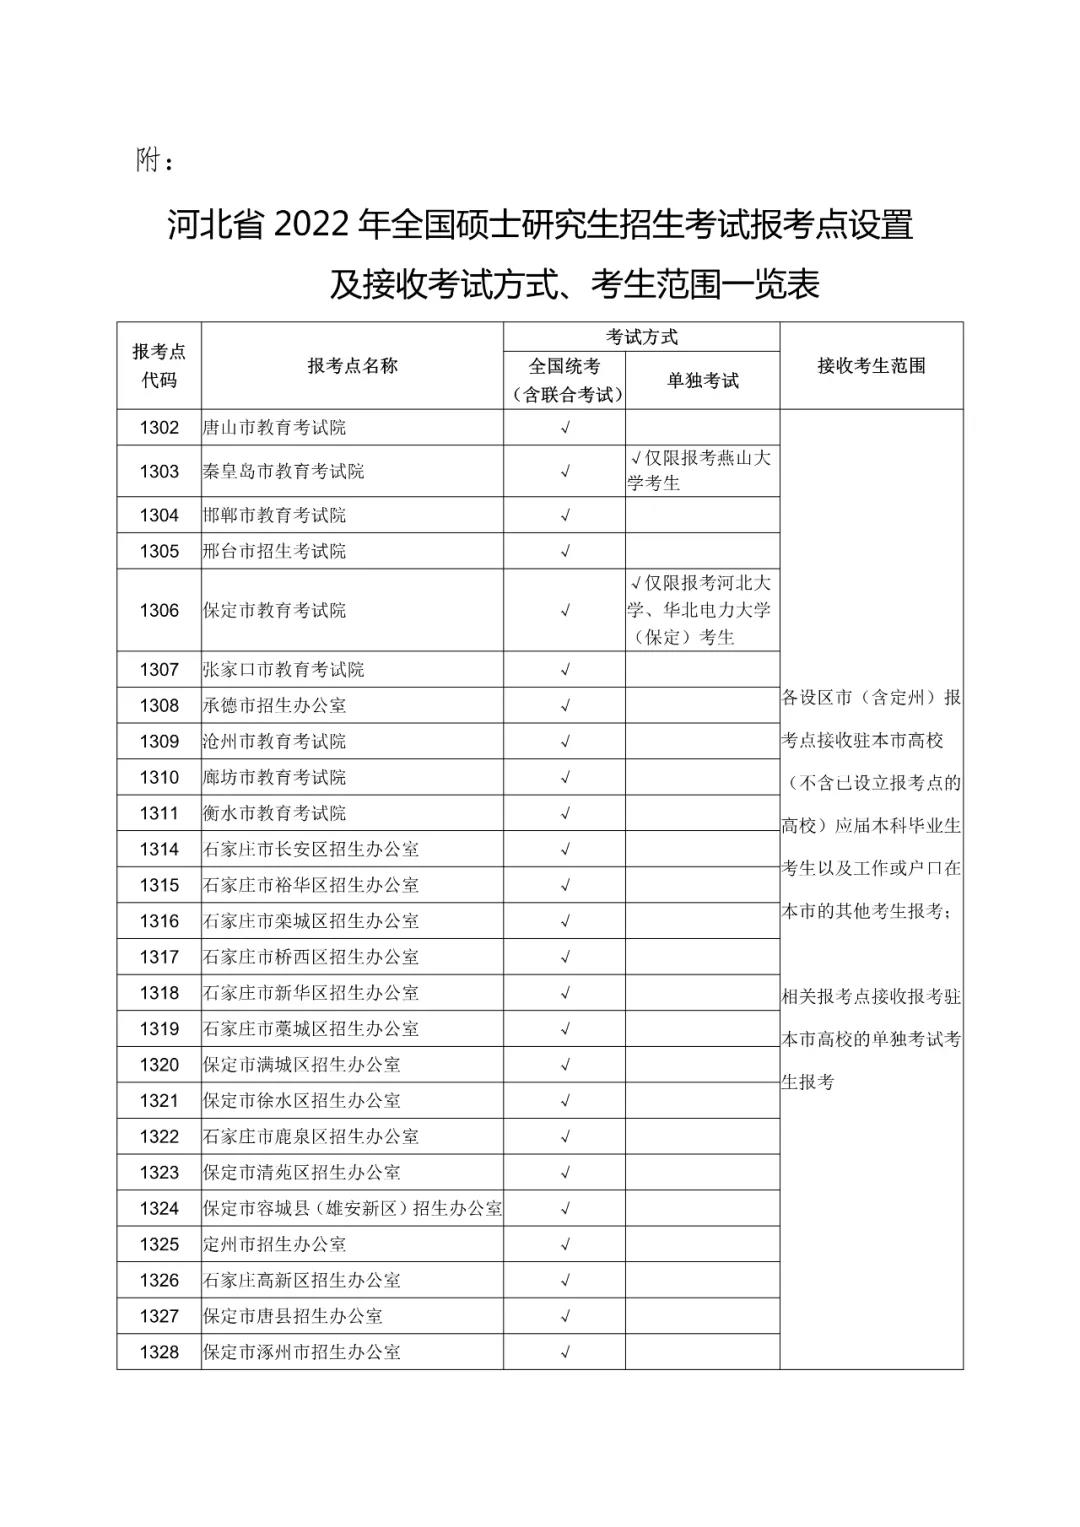 河北省2022年全国硕士研究生招生考试网上报名须知